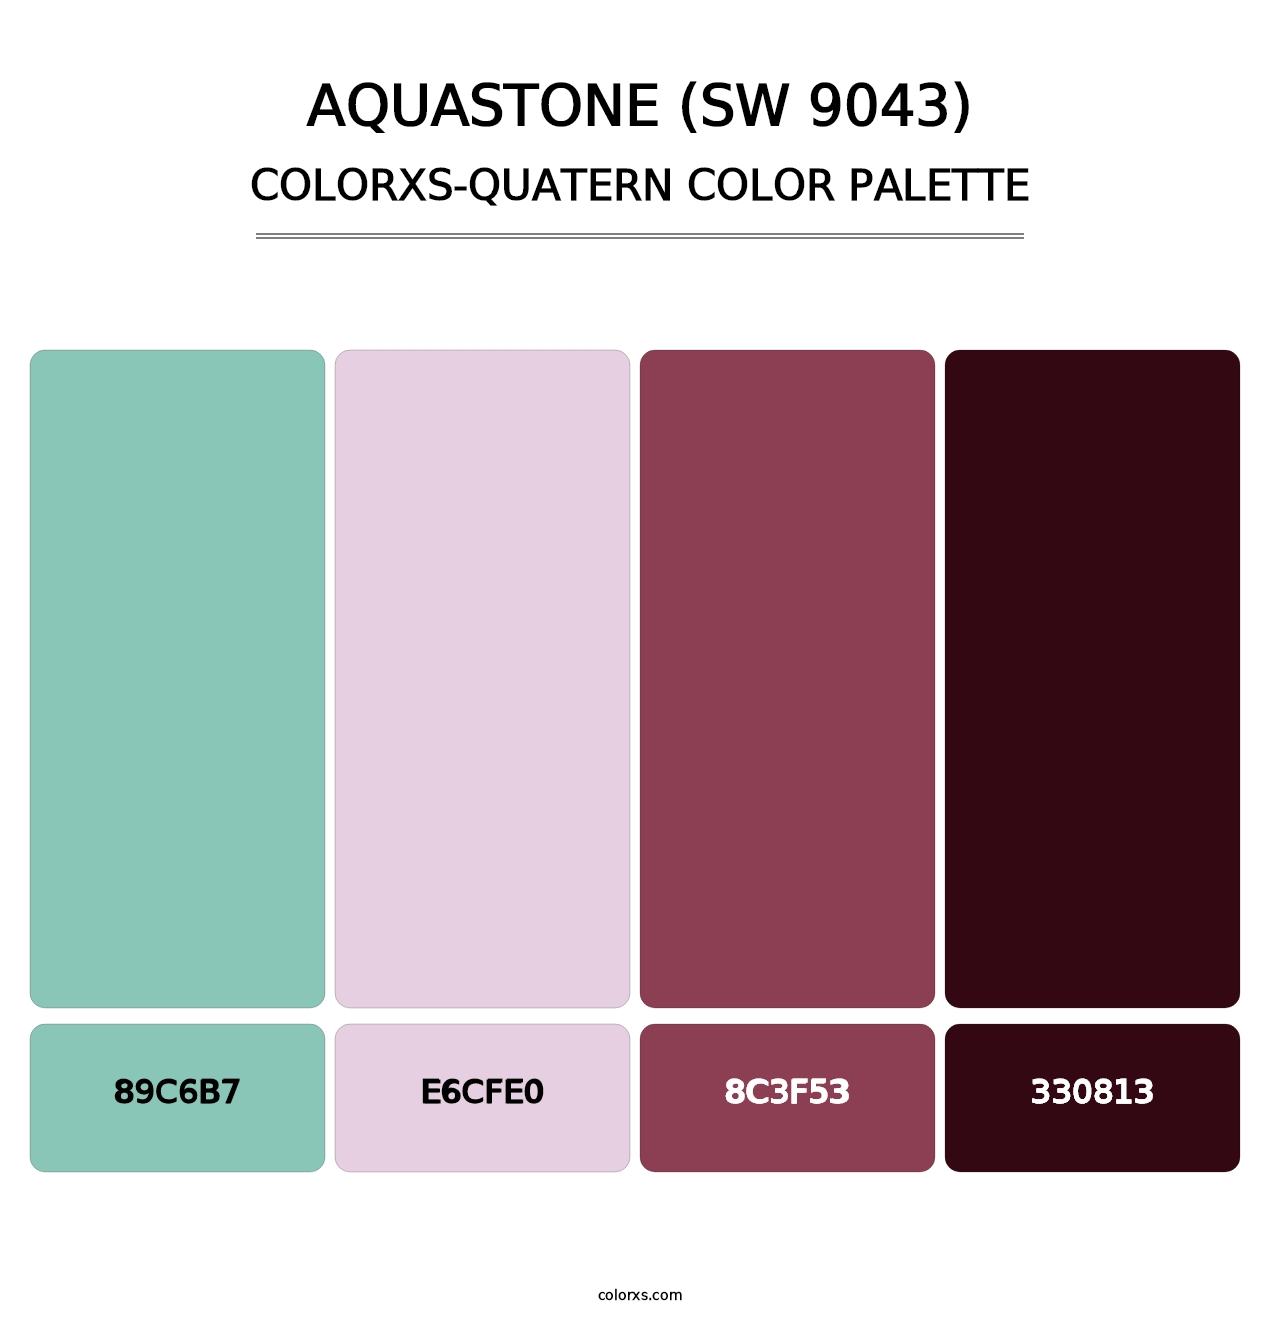 Aquastone (SW 9043) - Colorxs Quatern Palette